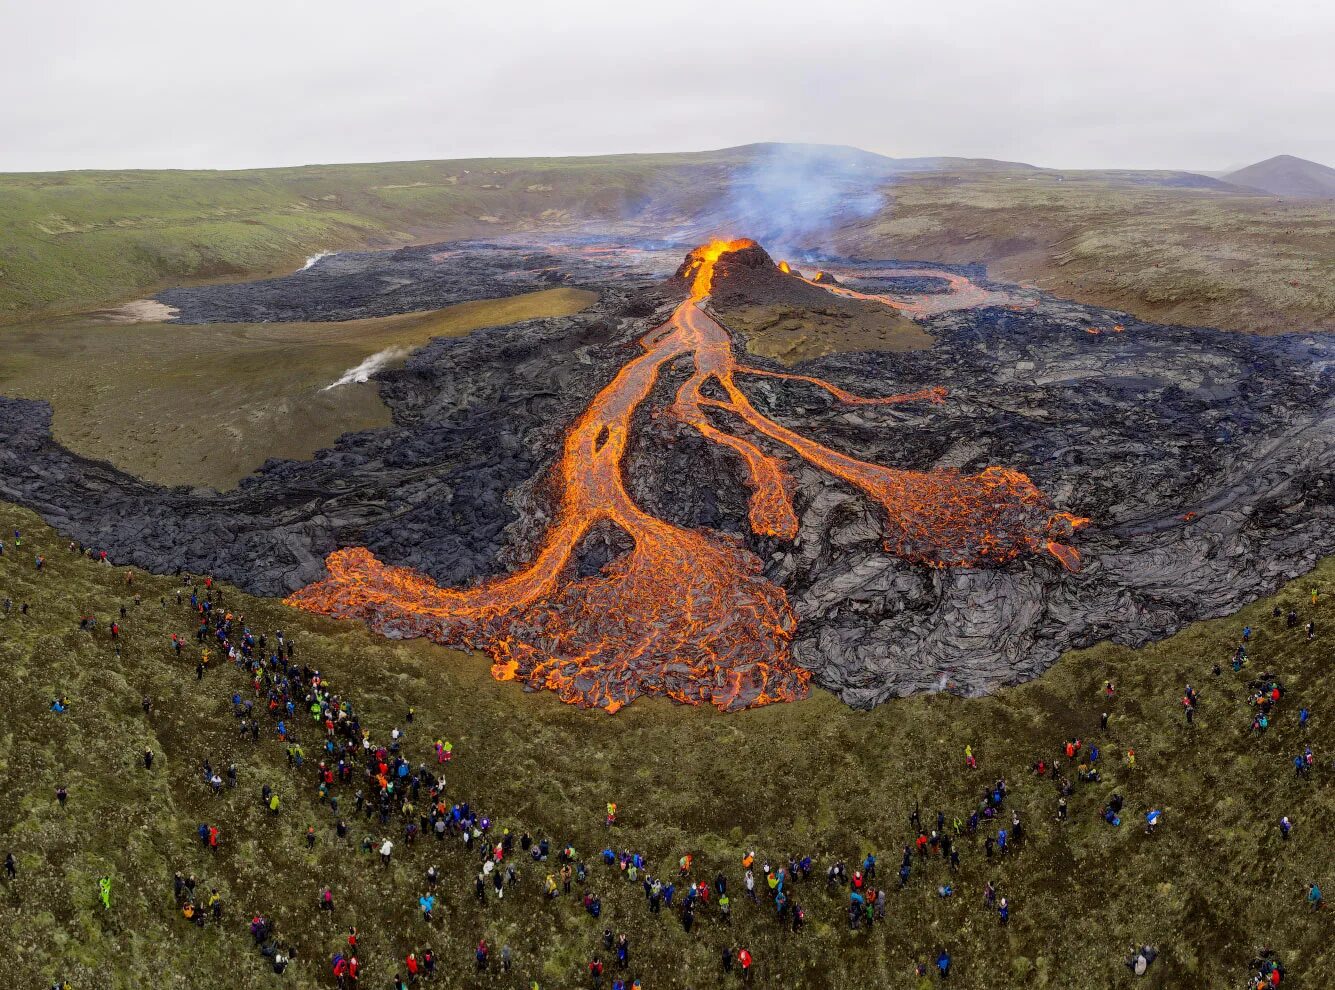 Вулкан начал извергаться. Извержение вулкана в Исландии 2021. Вулкан в Исландии фаградальсфьядль. Извержение вулкана фаградальсфьядль в Исландии. Извержение вулкана в Исландии Эйяфьятлайокудль.